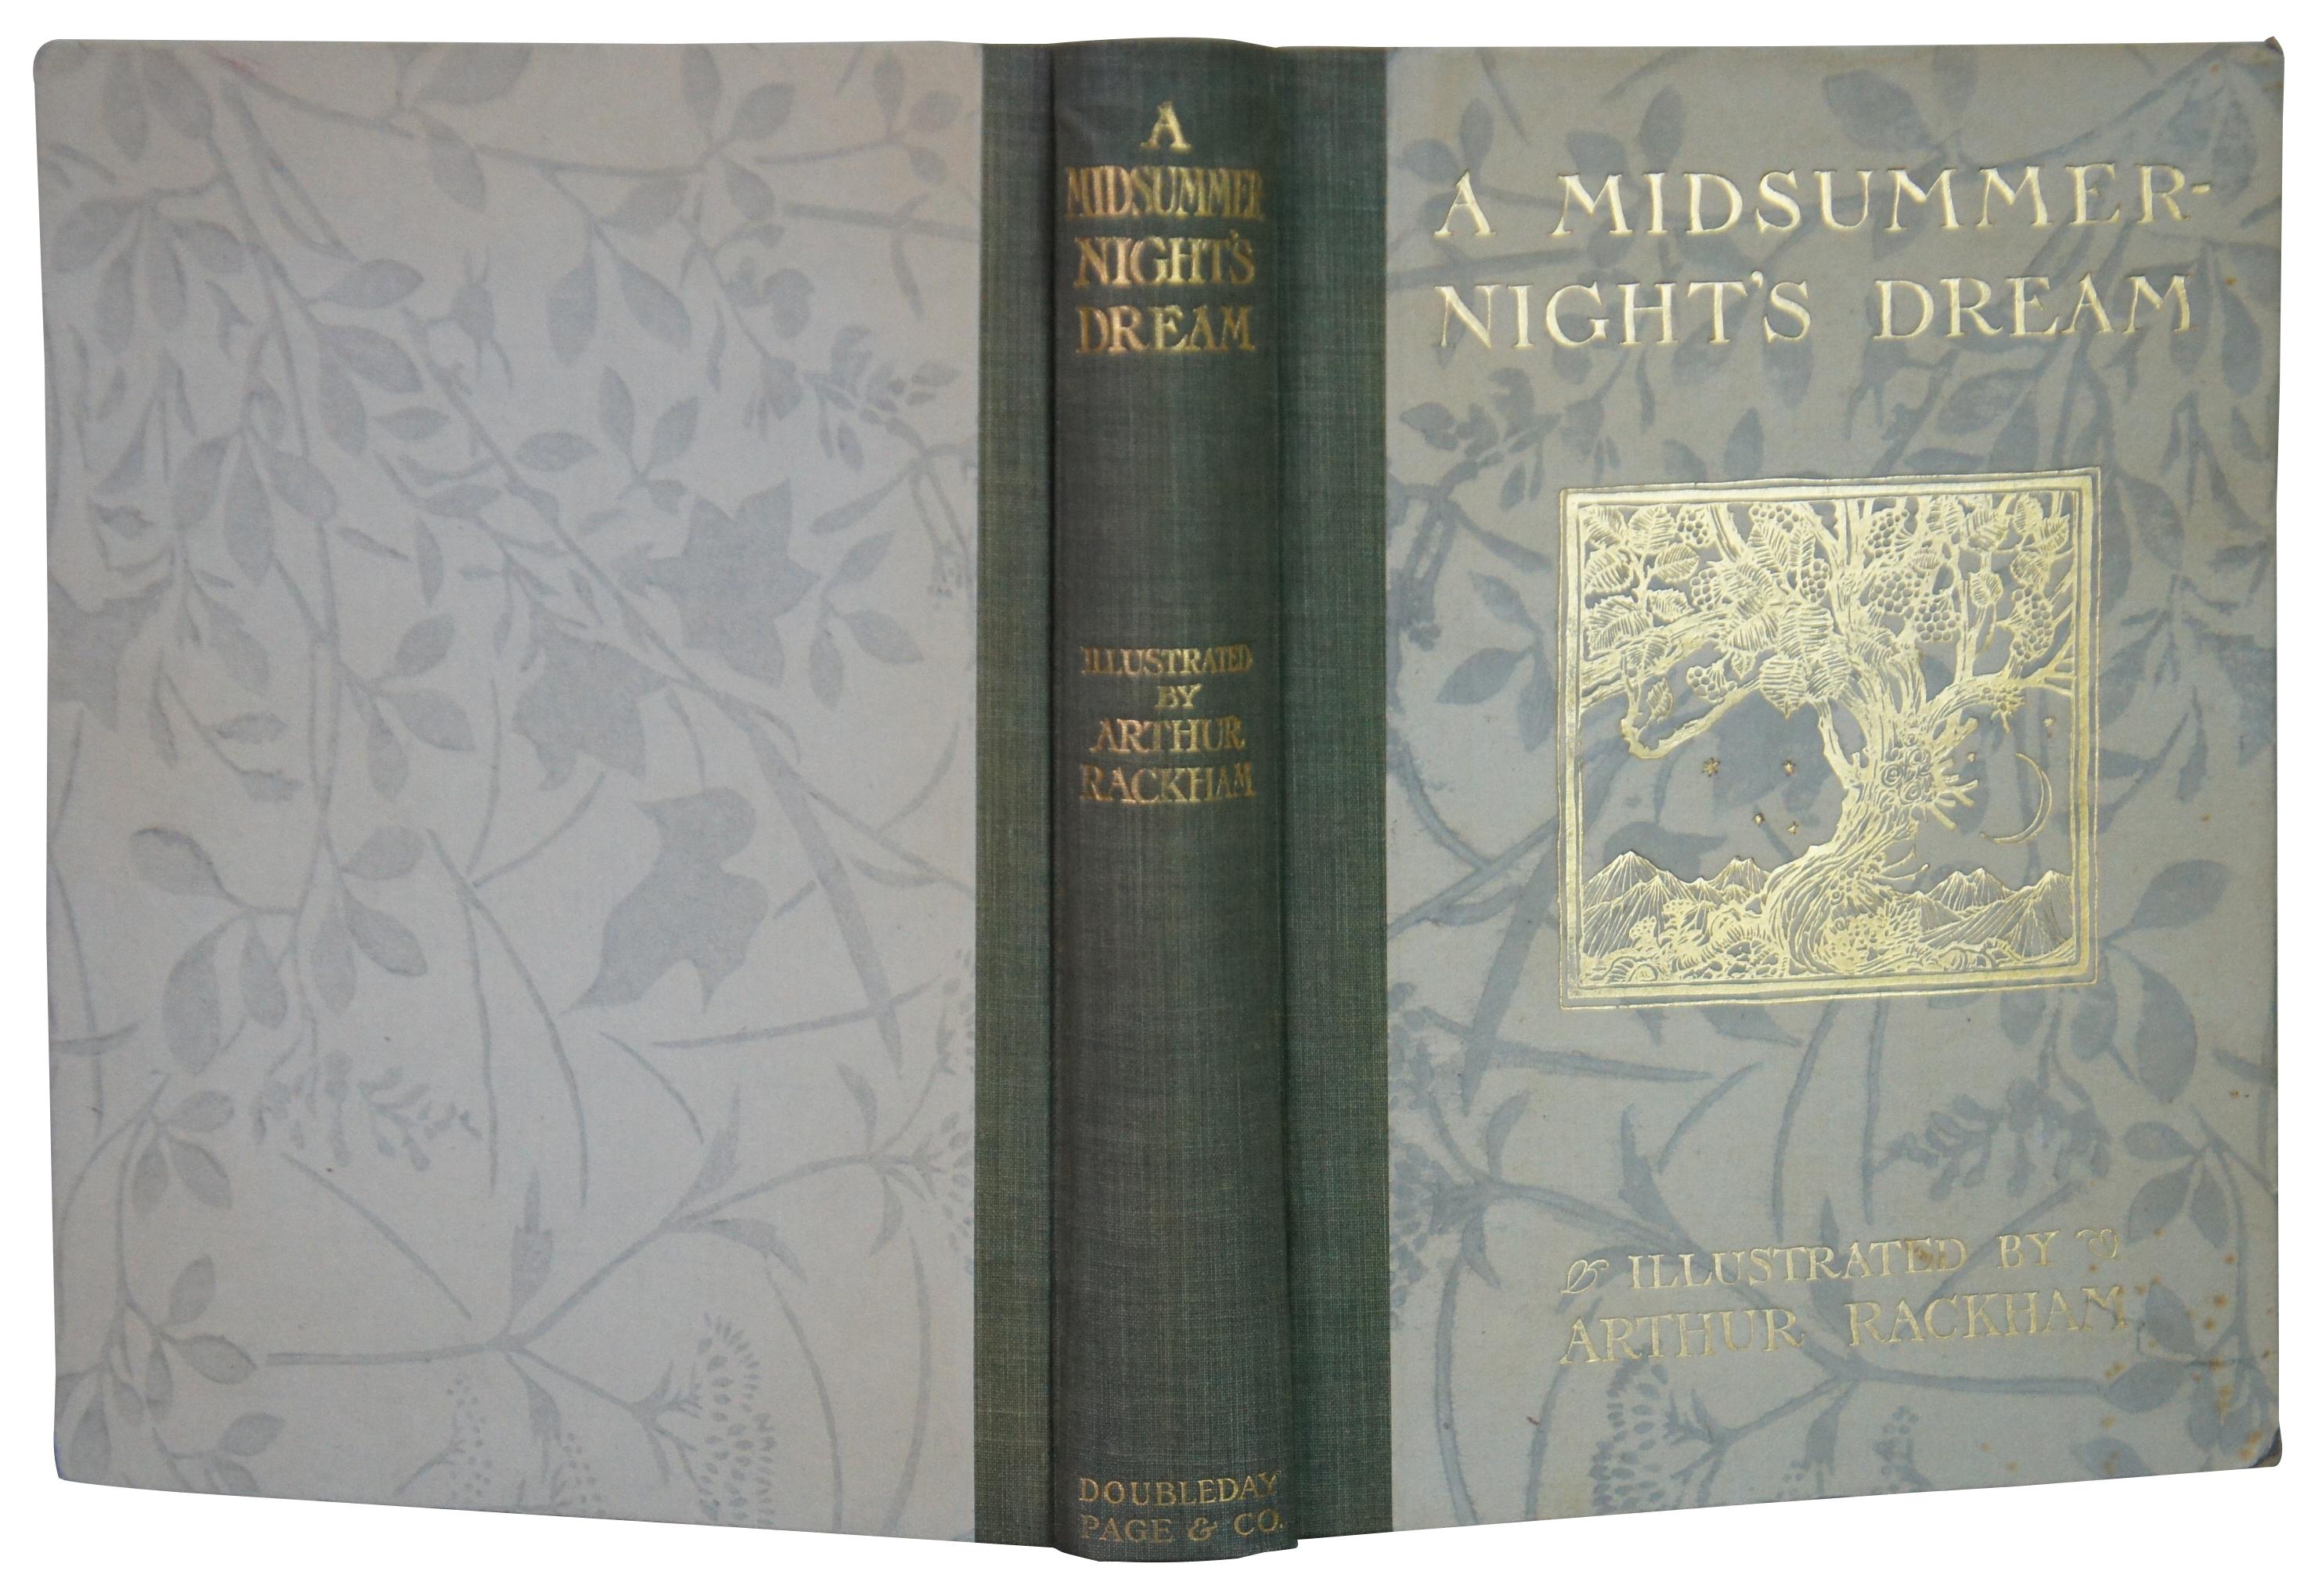 Édouardien Illustrations du rêve de Midsummer-Nights d'Arthur Rackham, 1908, page double de jour en vente